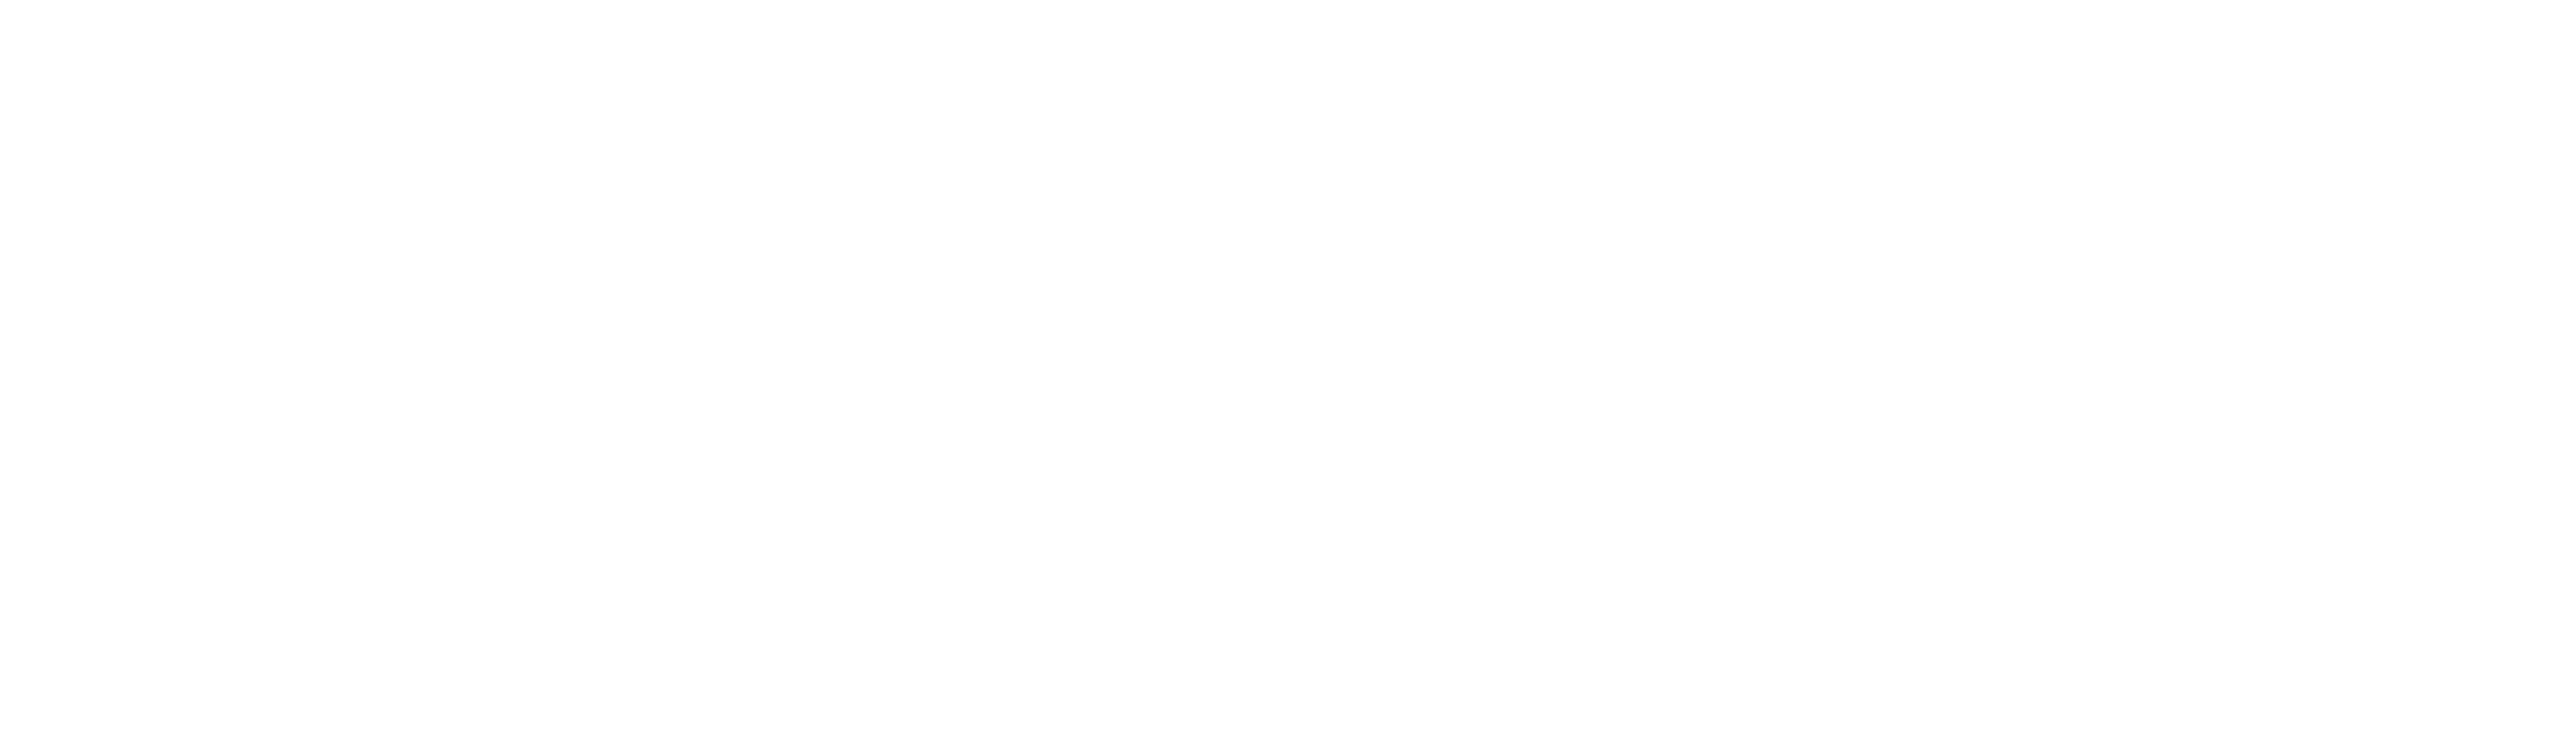 Swiss Army Man logo